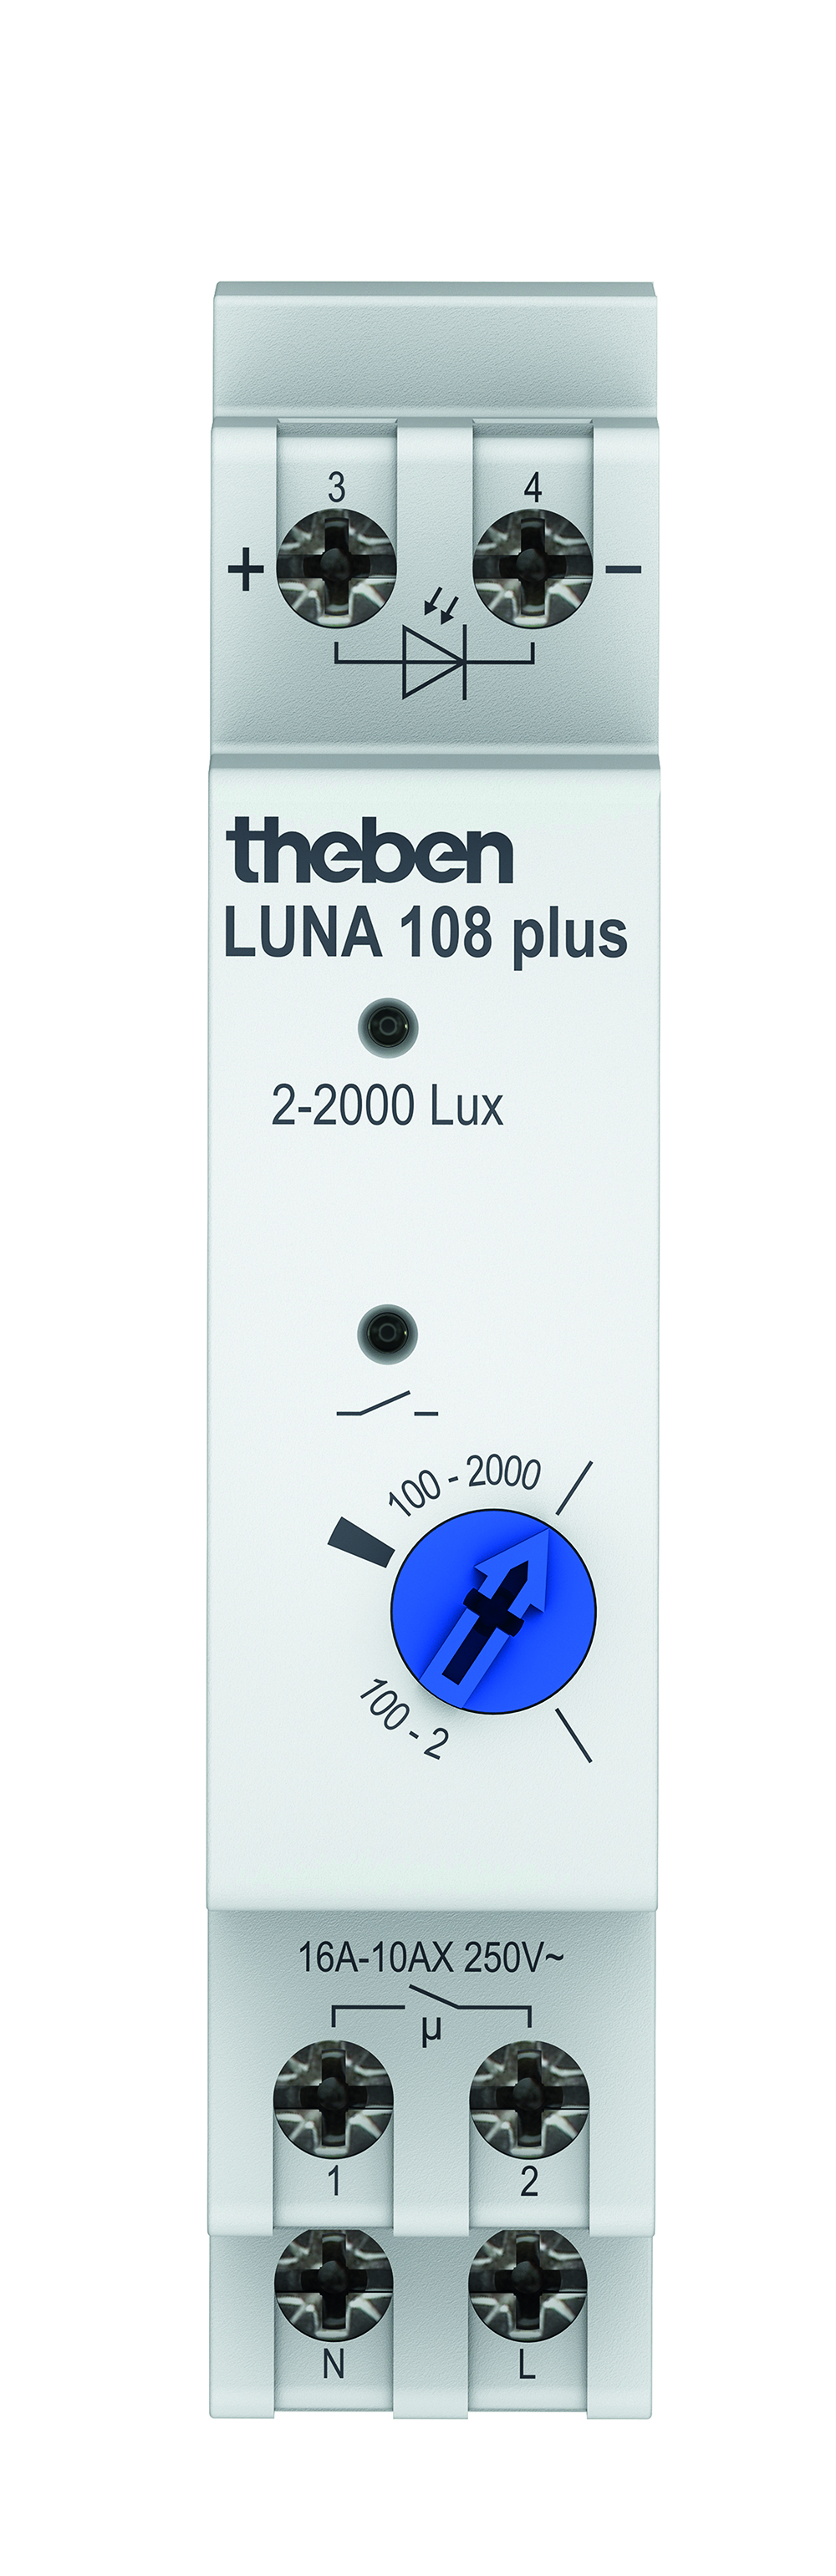 Theben Dämmerungsschalter LUNA 108 plus AL - 1080910